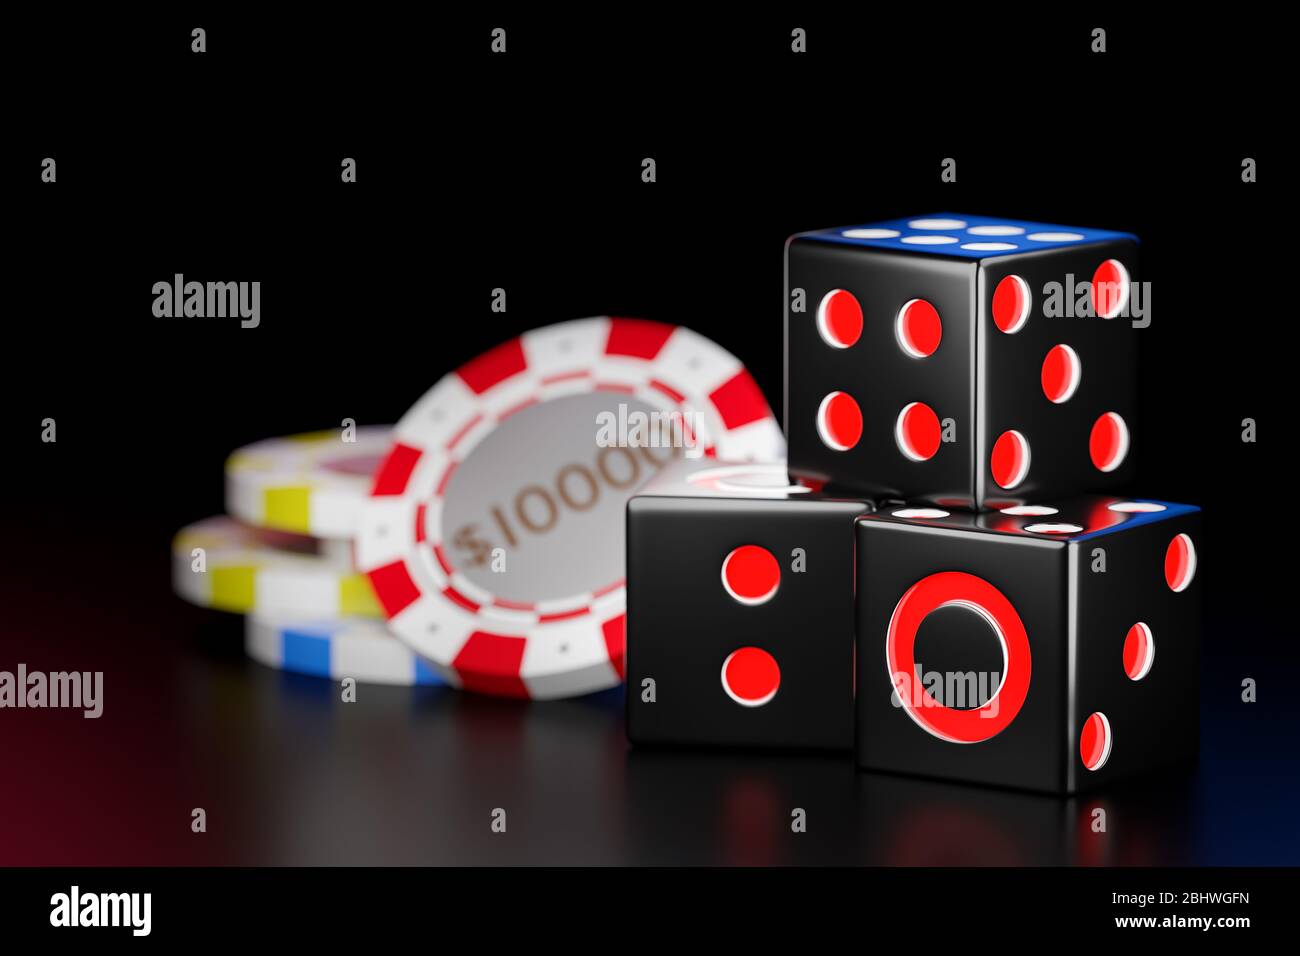 Würfel schwarz Würfel Stapel im dunklen Hintergrund. Casino Chips werden verwendet, um Geld im Spiel Craps zu repräsentieren. Ideen für Glück und Risiko im Bett Stockfoto